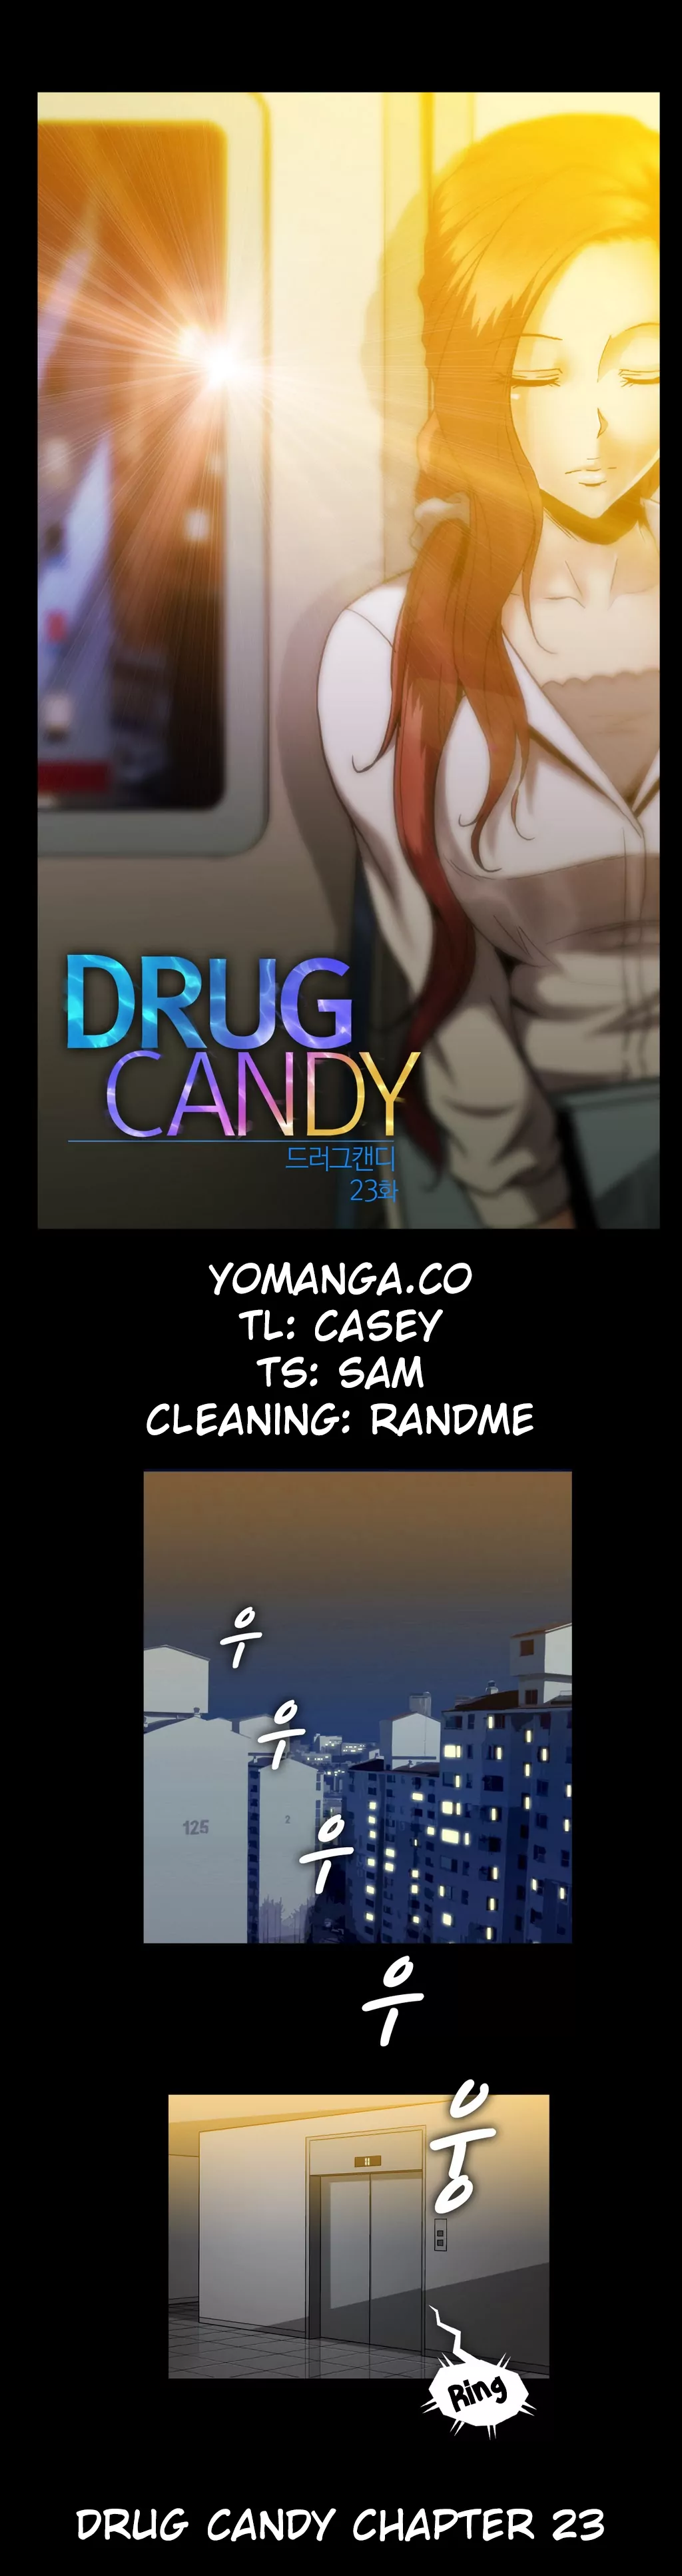 Drug Candy image